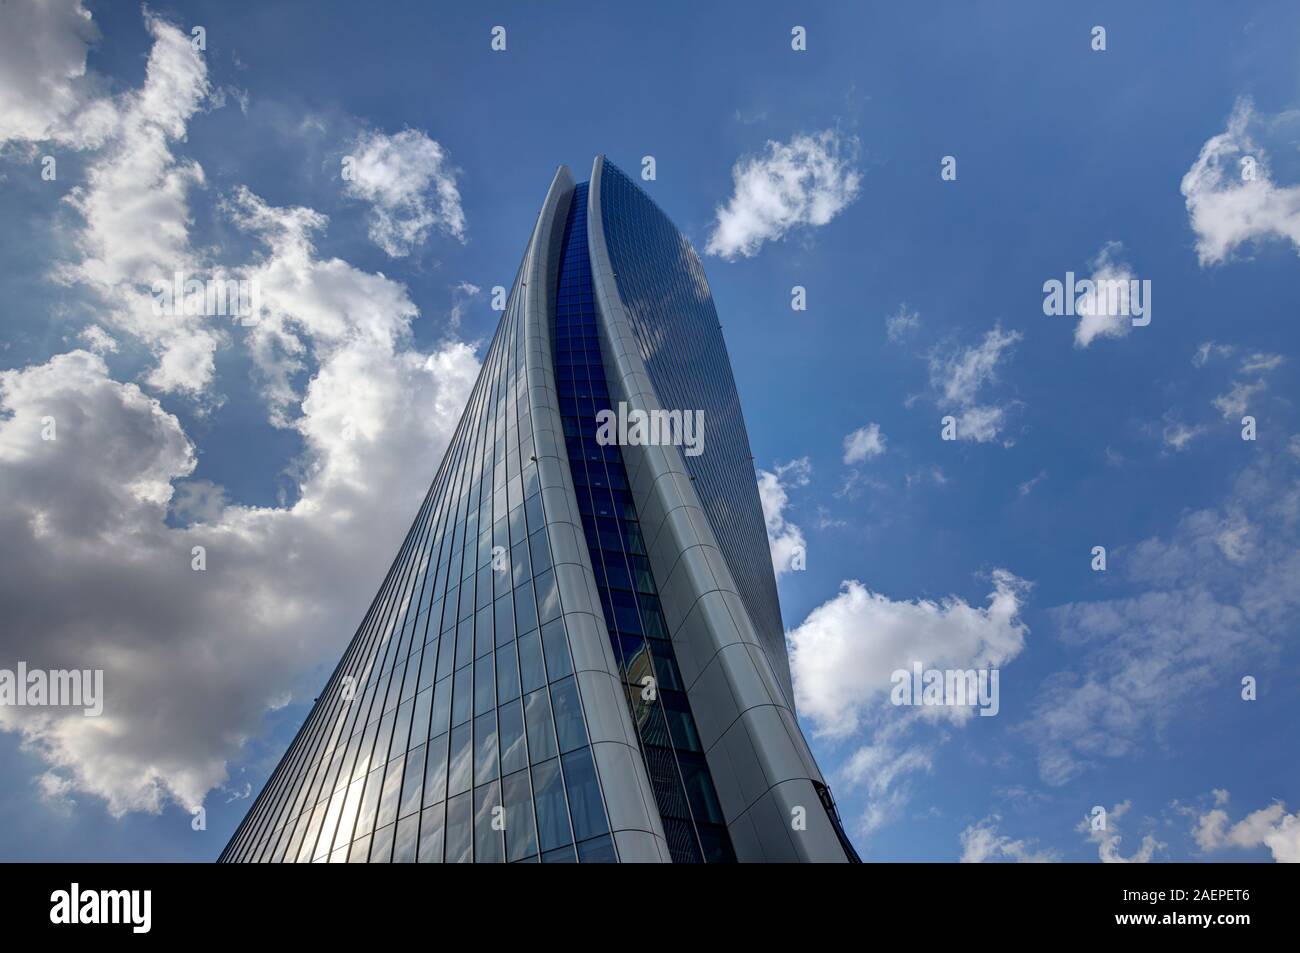 L'architecture moderne de la Tour Generali dans le quartier Citylife , Milan, Italie Banque D'Images